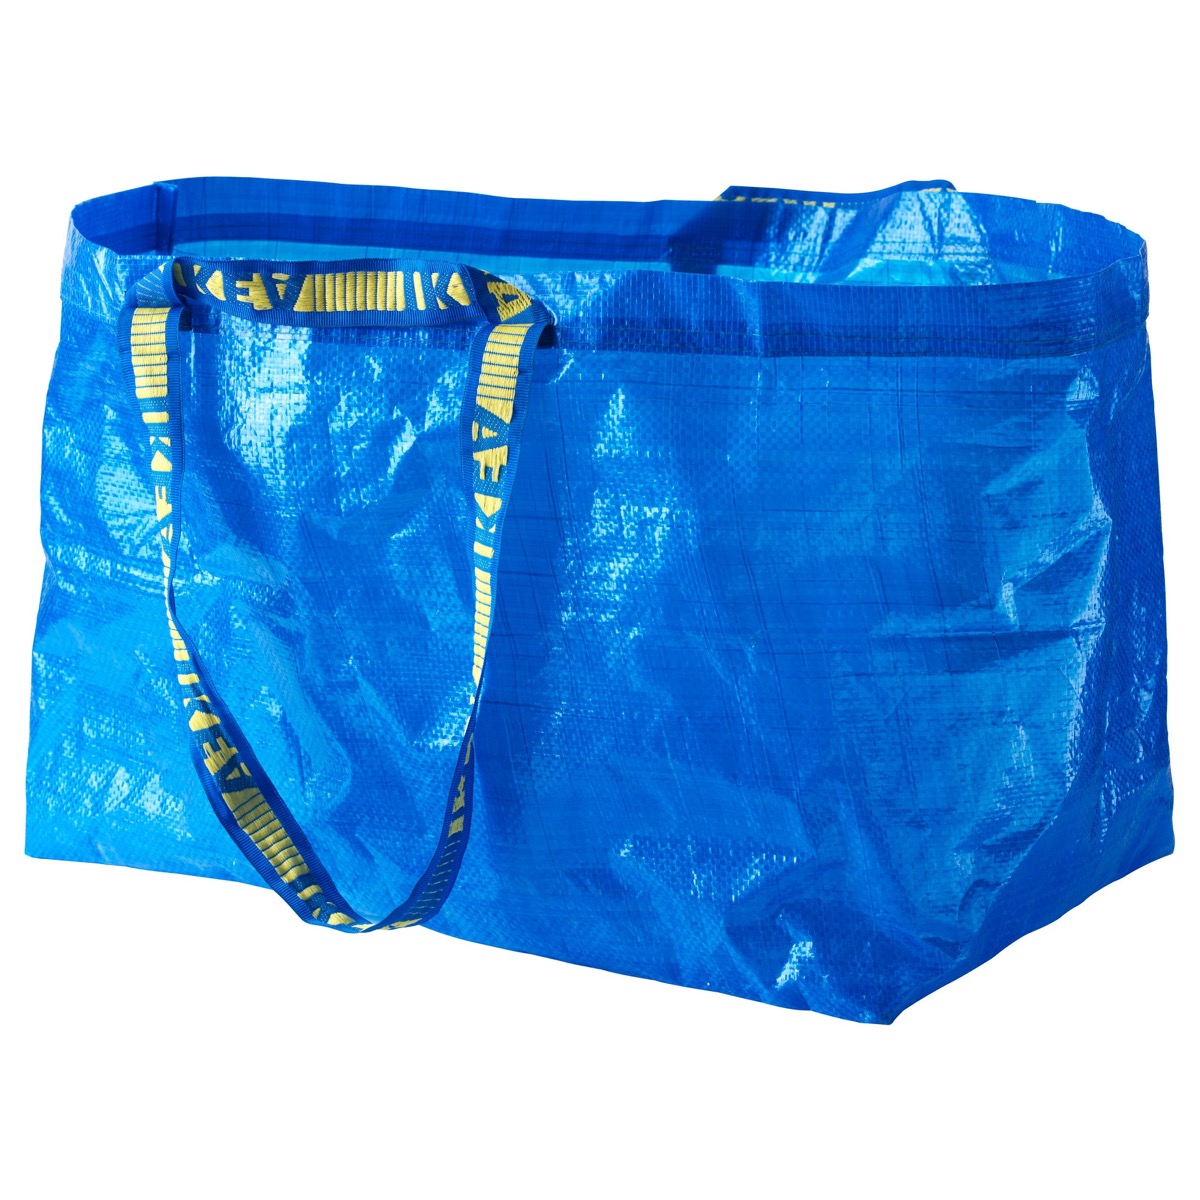 Ikea Big Blue Bag {Others Uses For Blue Ikea Bag}